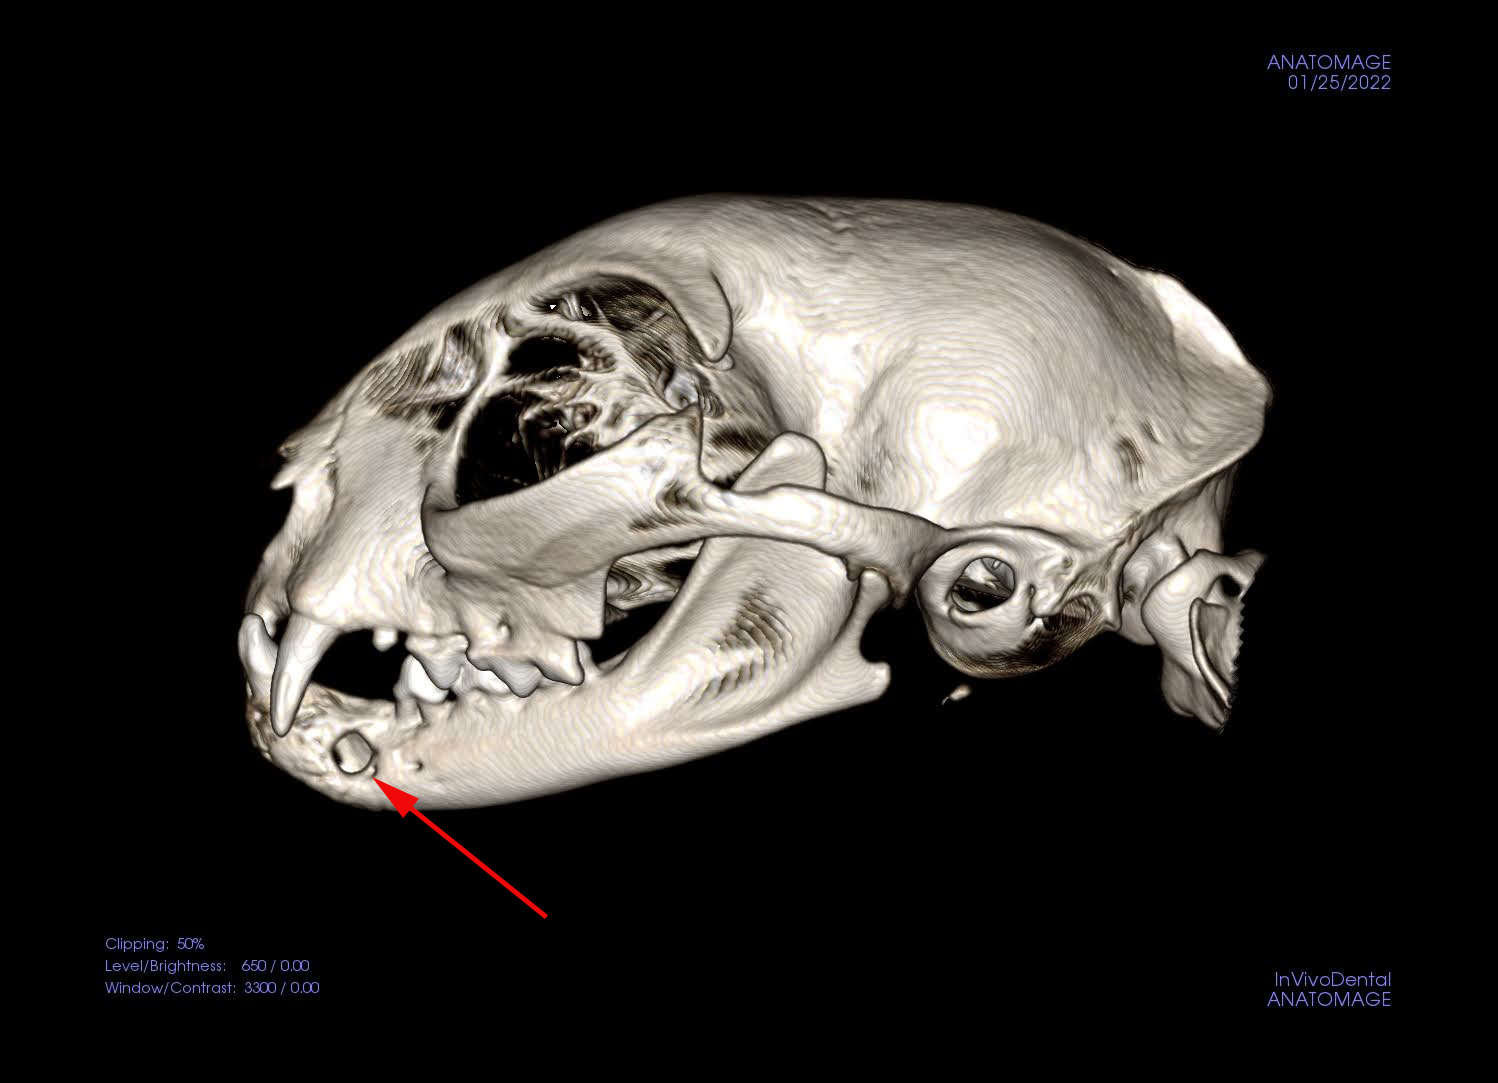 cone-beam CT 3D recon image